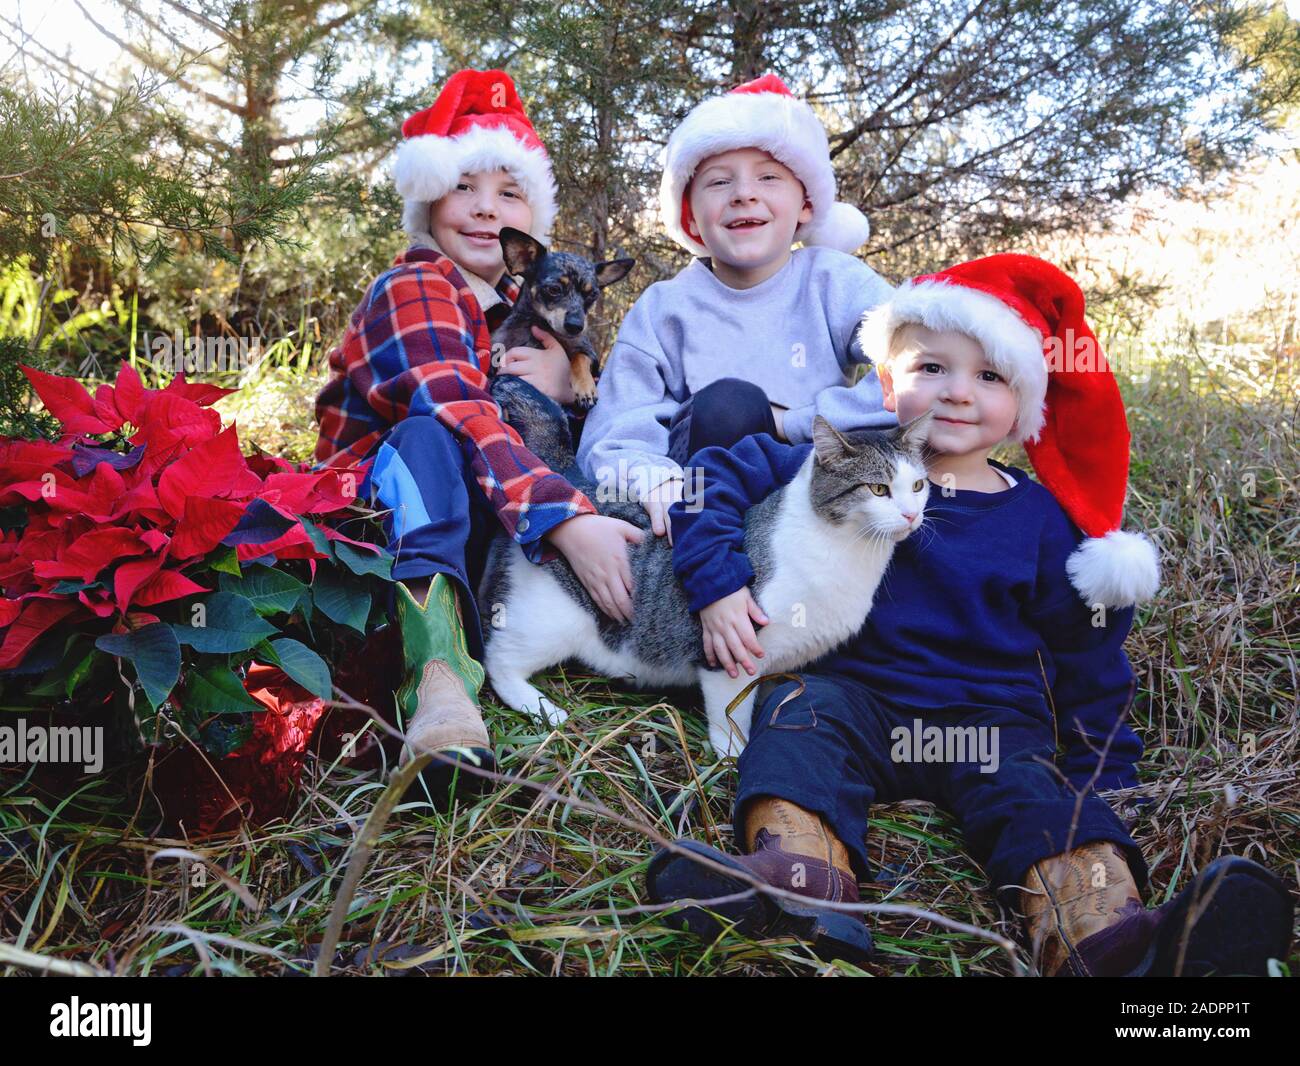 Three boys in Santa hats holding cat and dog Stock Photo